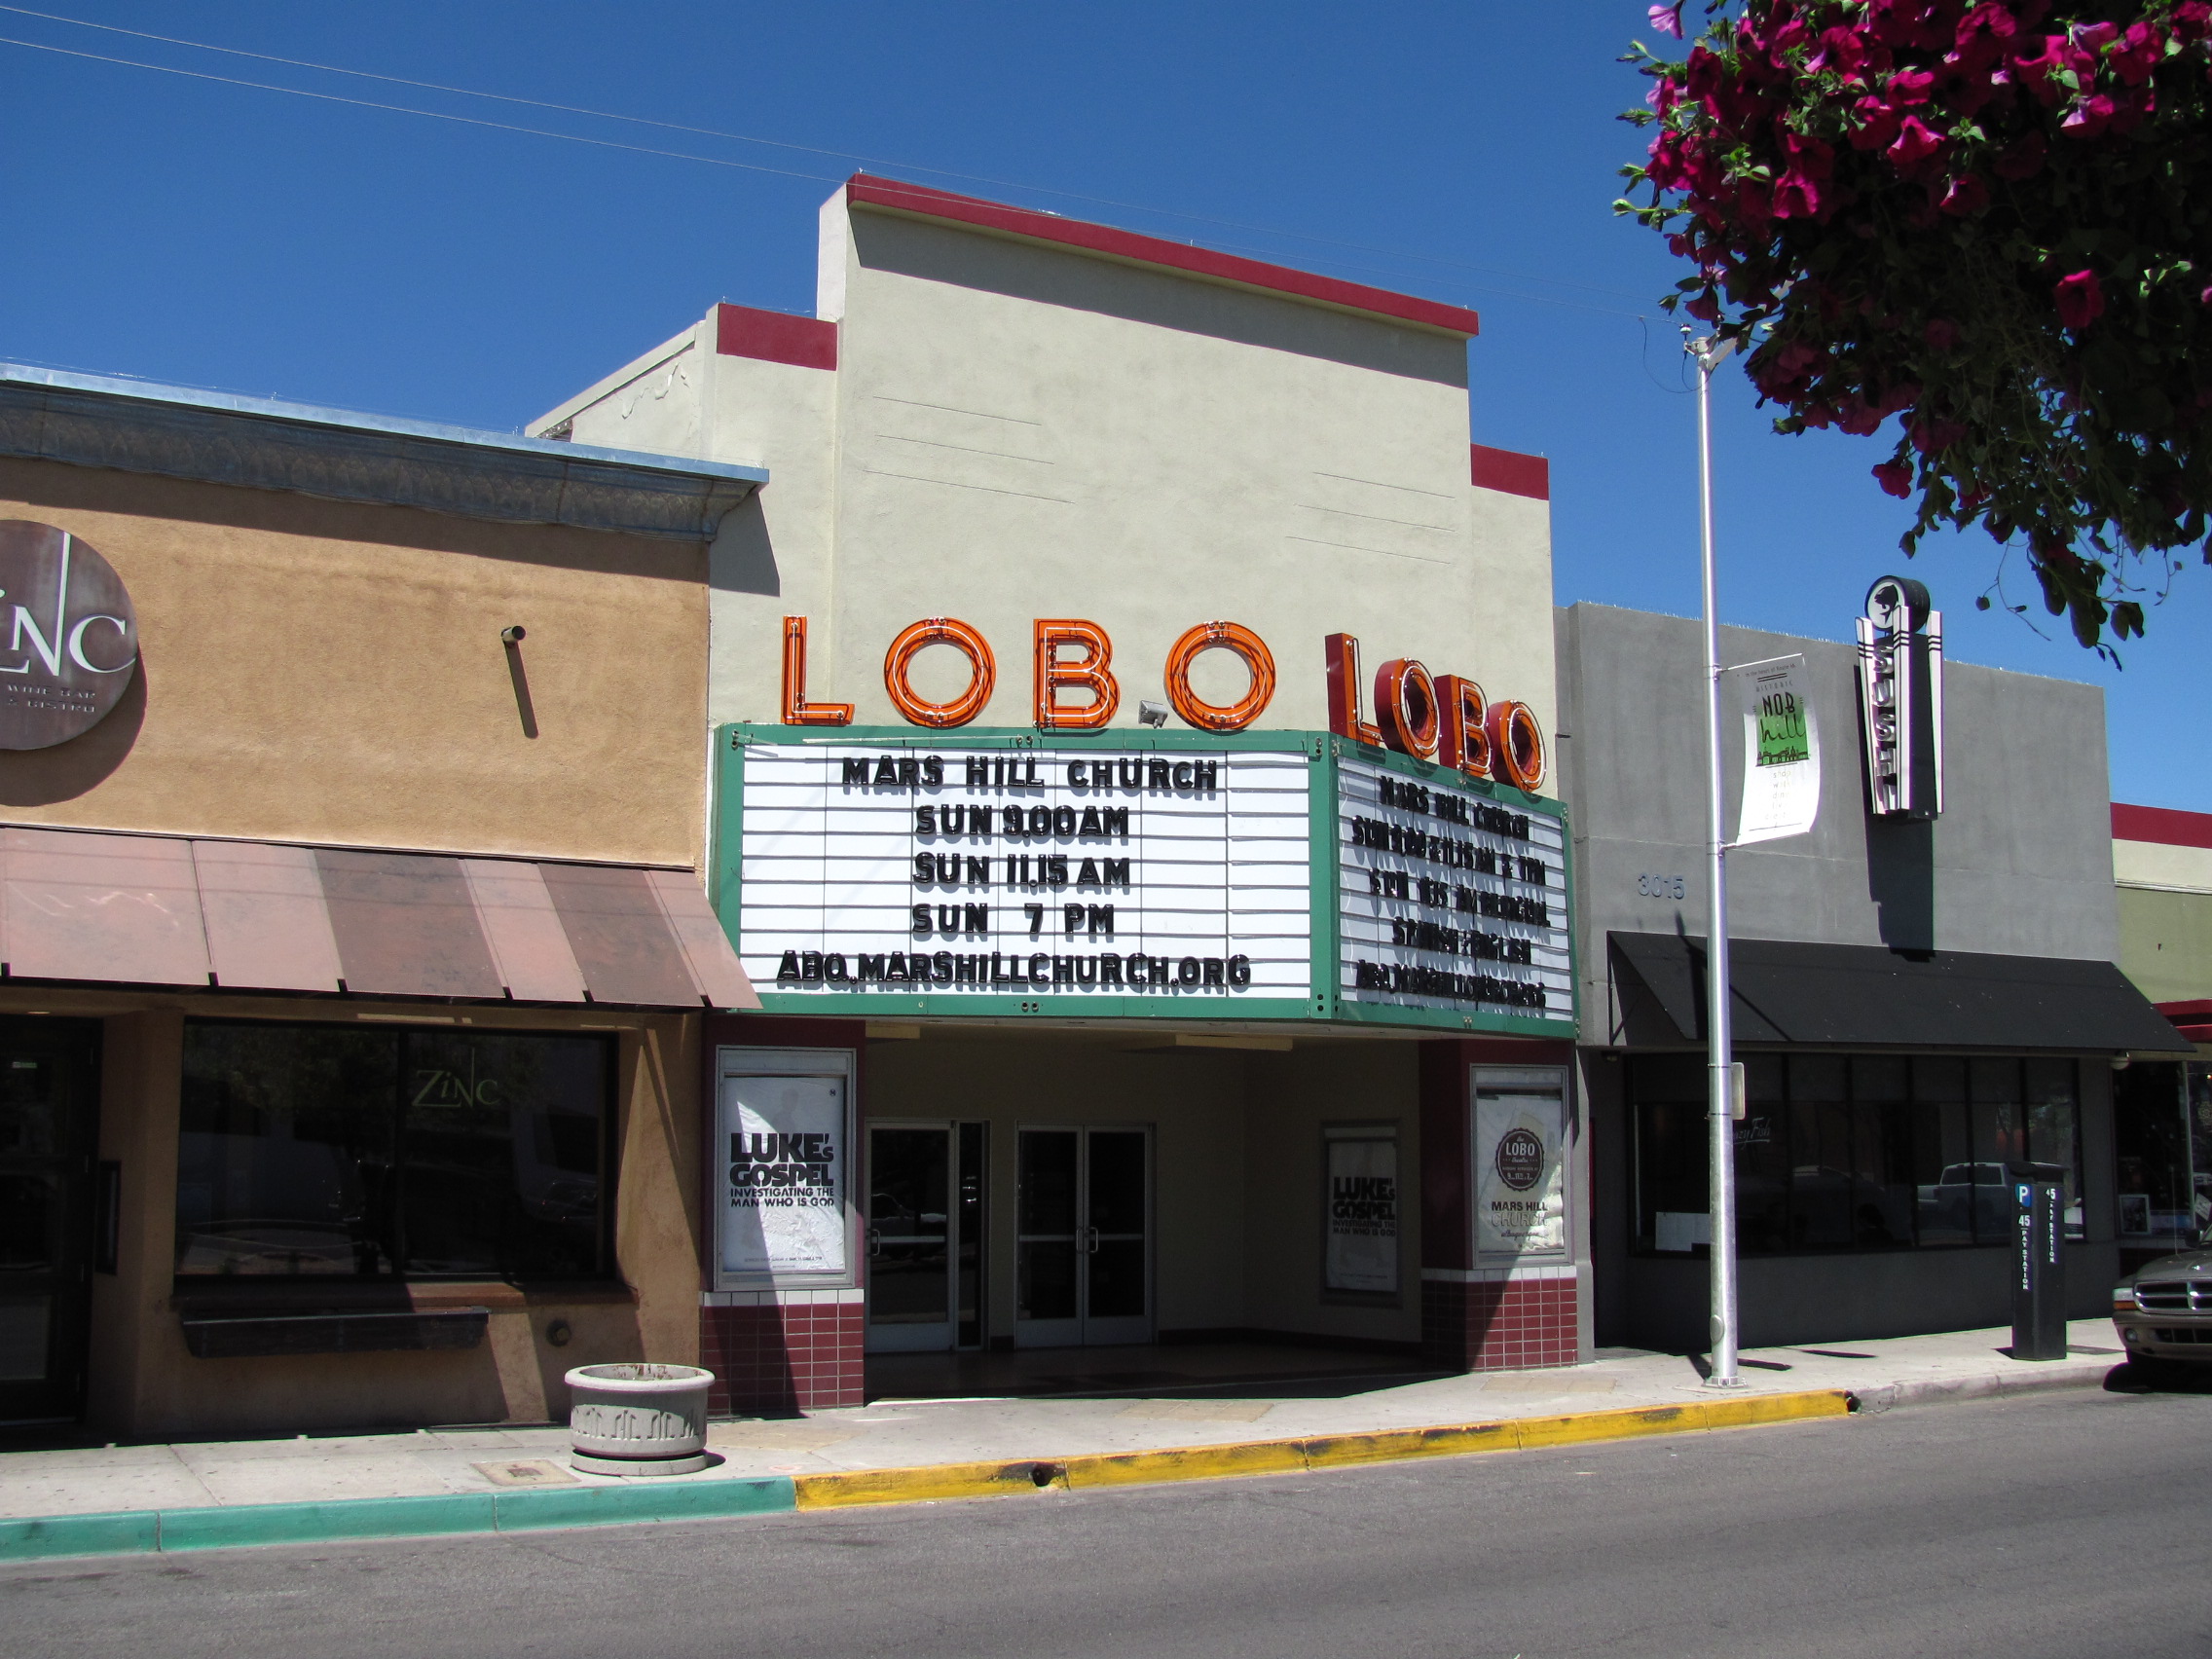 Lobo Theater, Albuquerque NM.jpg. 